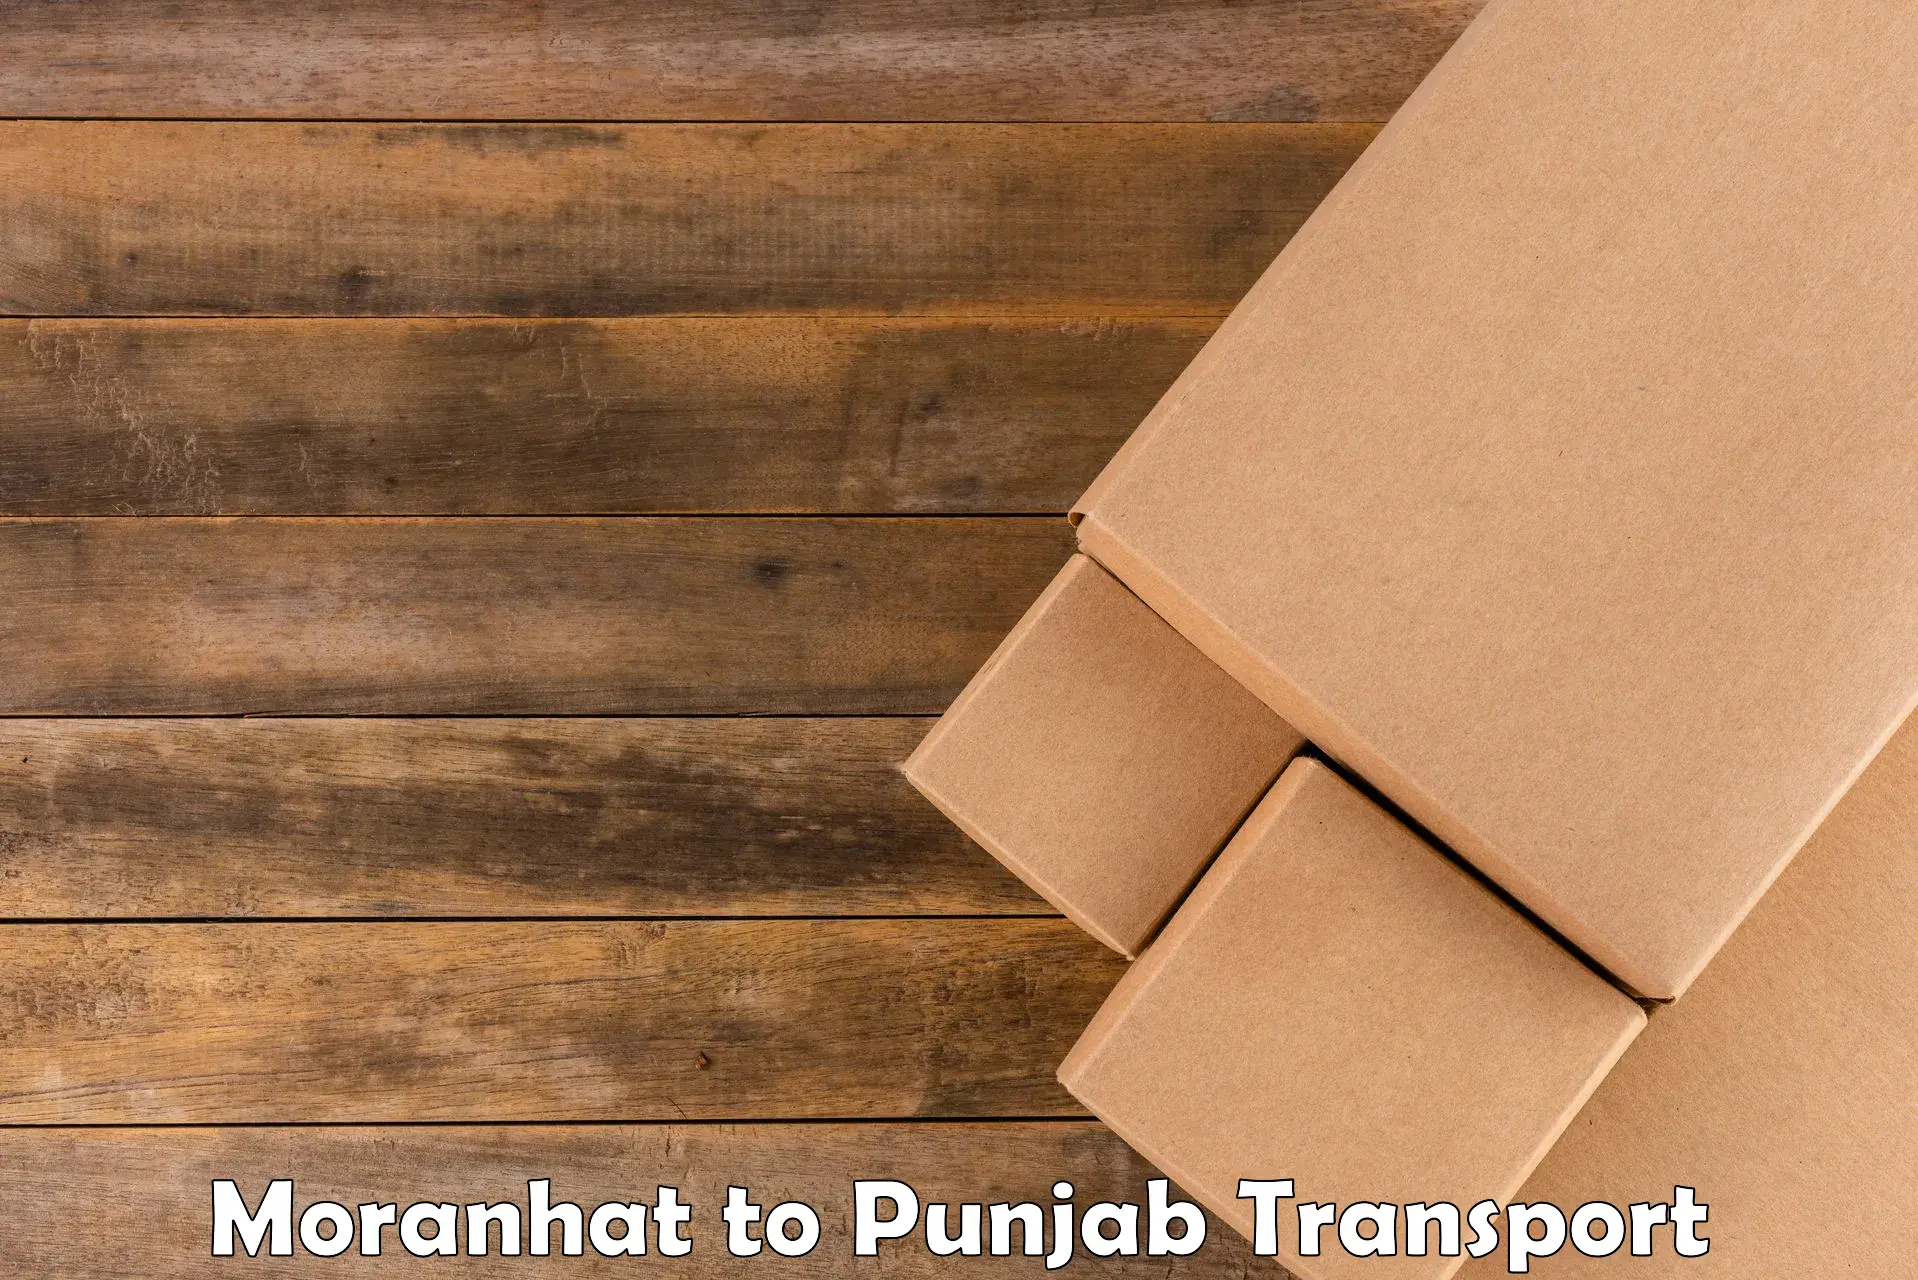 Transport in sharing Moranhat to Punjab